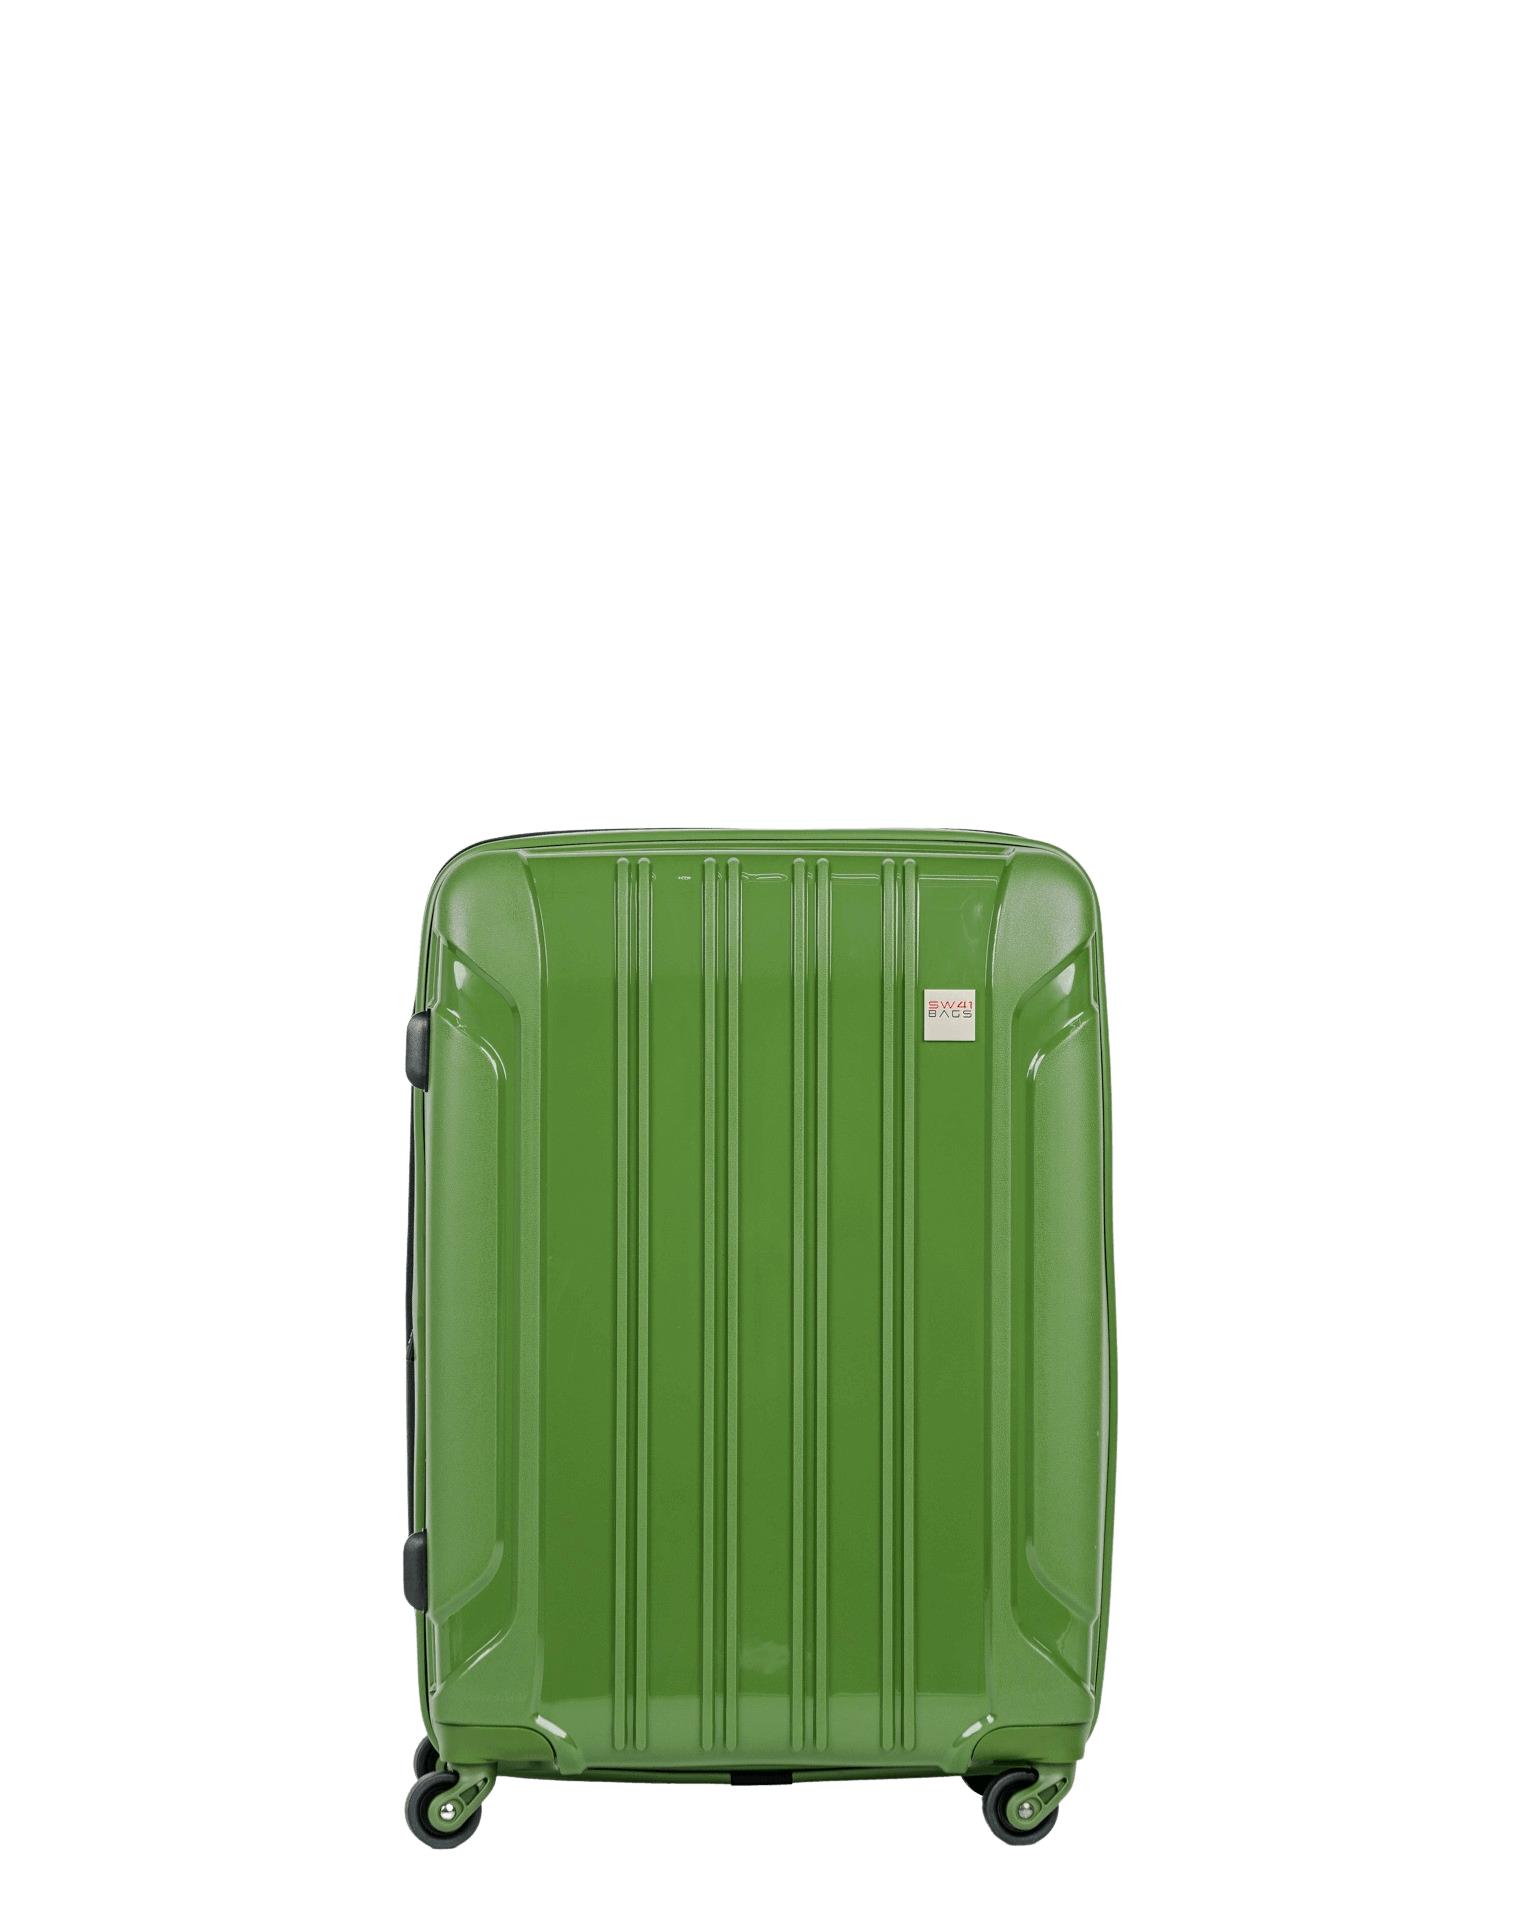 Tourist - Grösse M erweiterbar 65cm - Swissbags: Travel Bags, Luggage,  Accessories - Vouvry, Switzerland - Travel Bags, Luggage, Accessories -  Vouvry, Switzerland